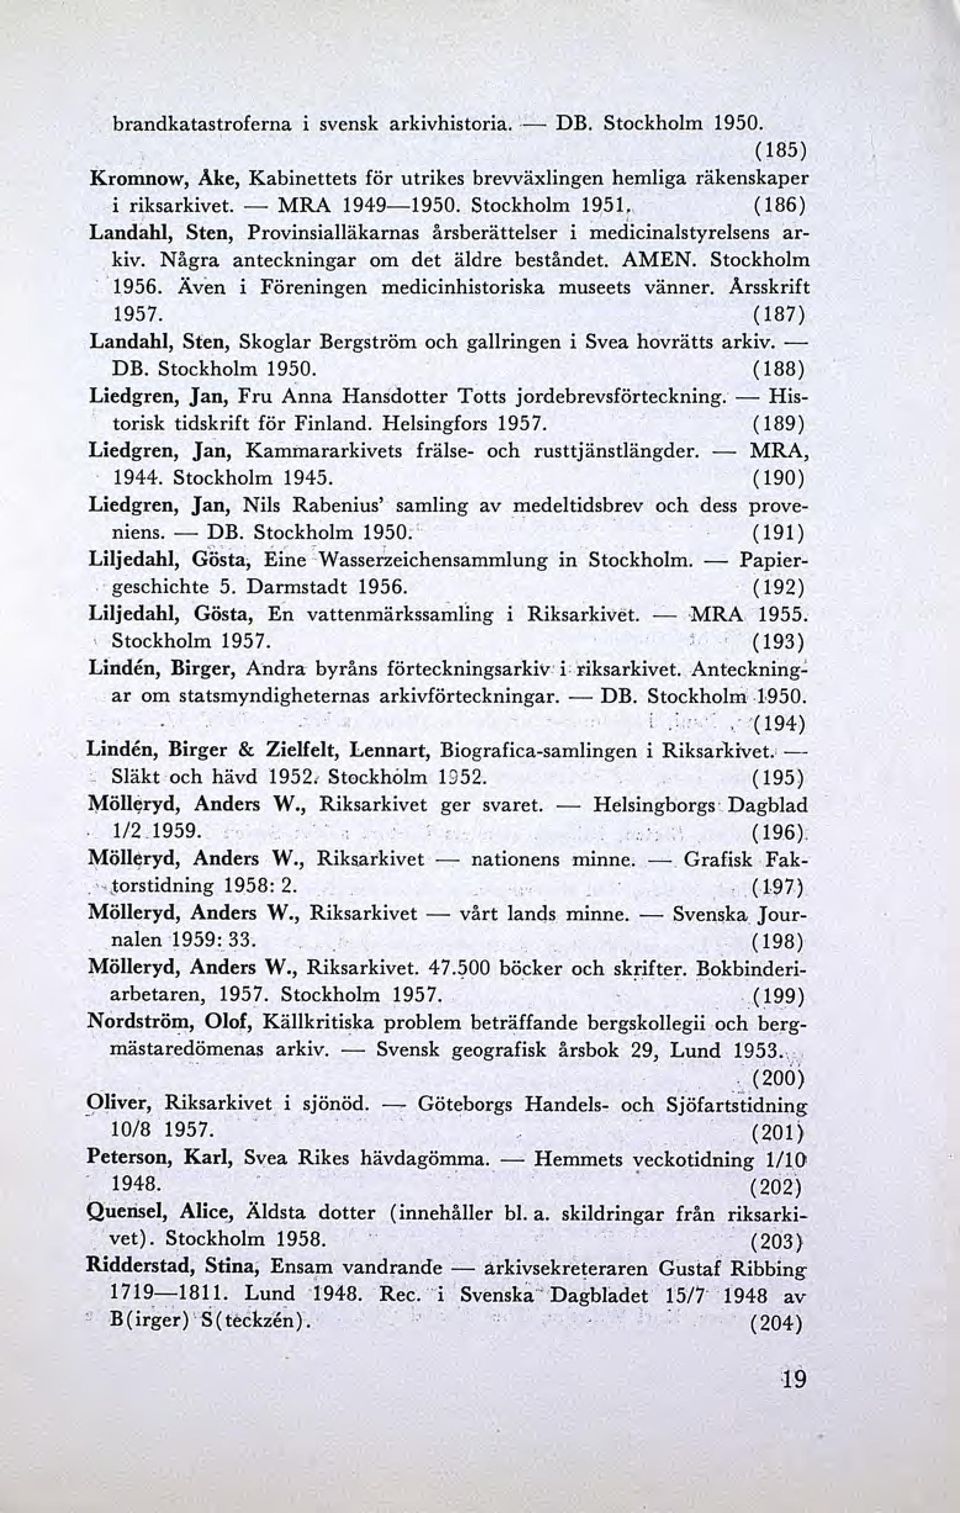 Även i Föreningen medicinhistoriska museets vänner. Arsskrift 1957. (187) Landahl, Sfen, Skoglar Bergström och gallringen i Svea hovrätts arkiv. - DB. Stockholm 1950.